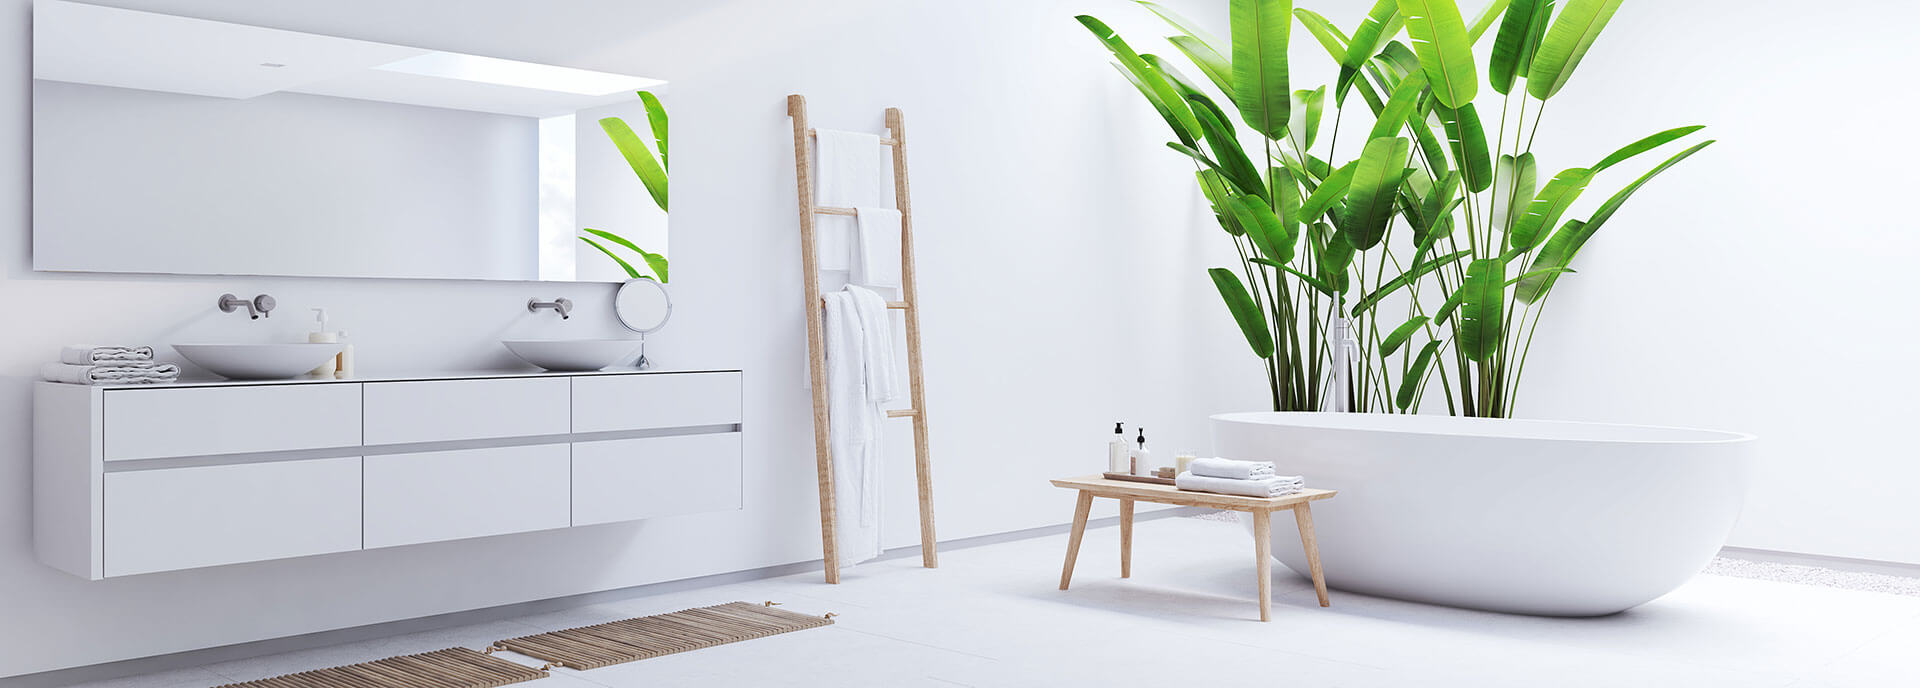 Weißes Badezimmer mit Deko-Accessoires aus Holz und Grünpflanze